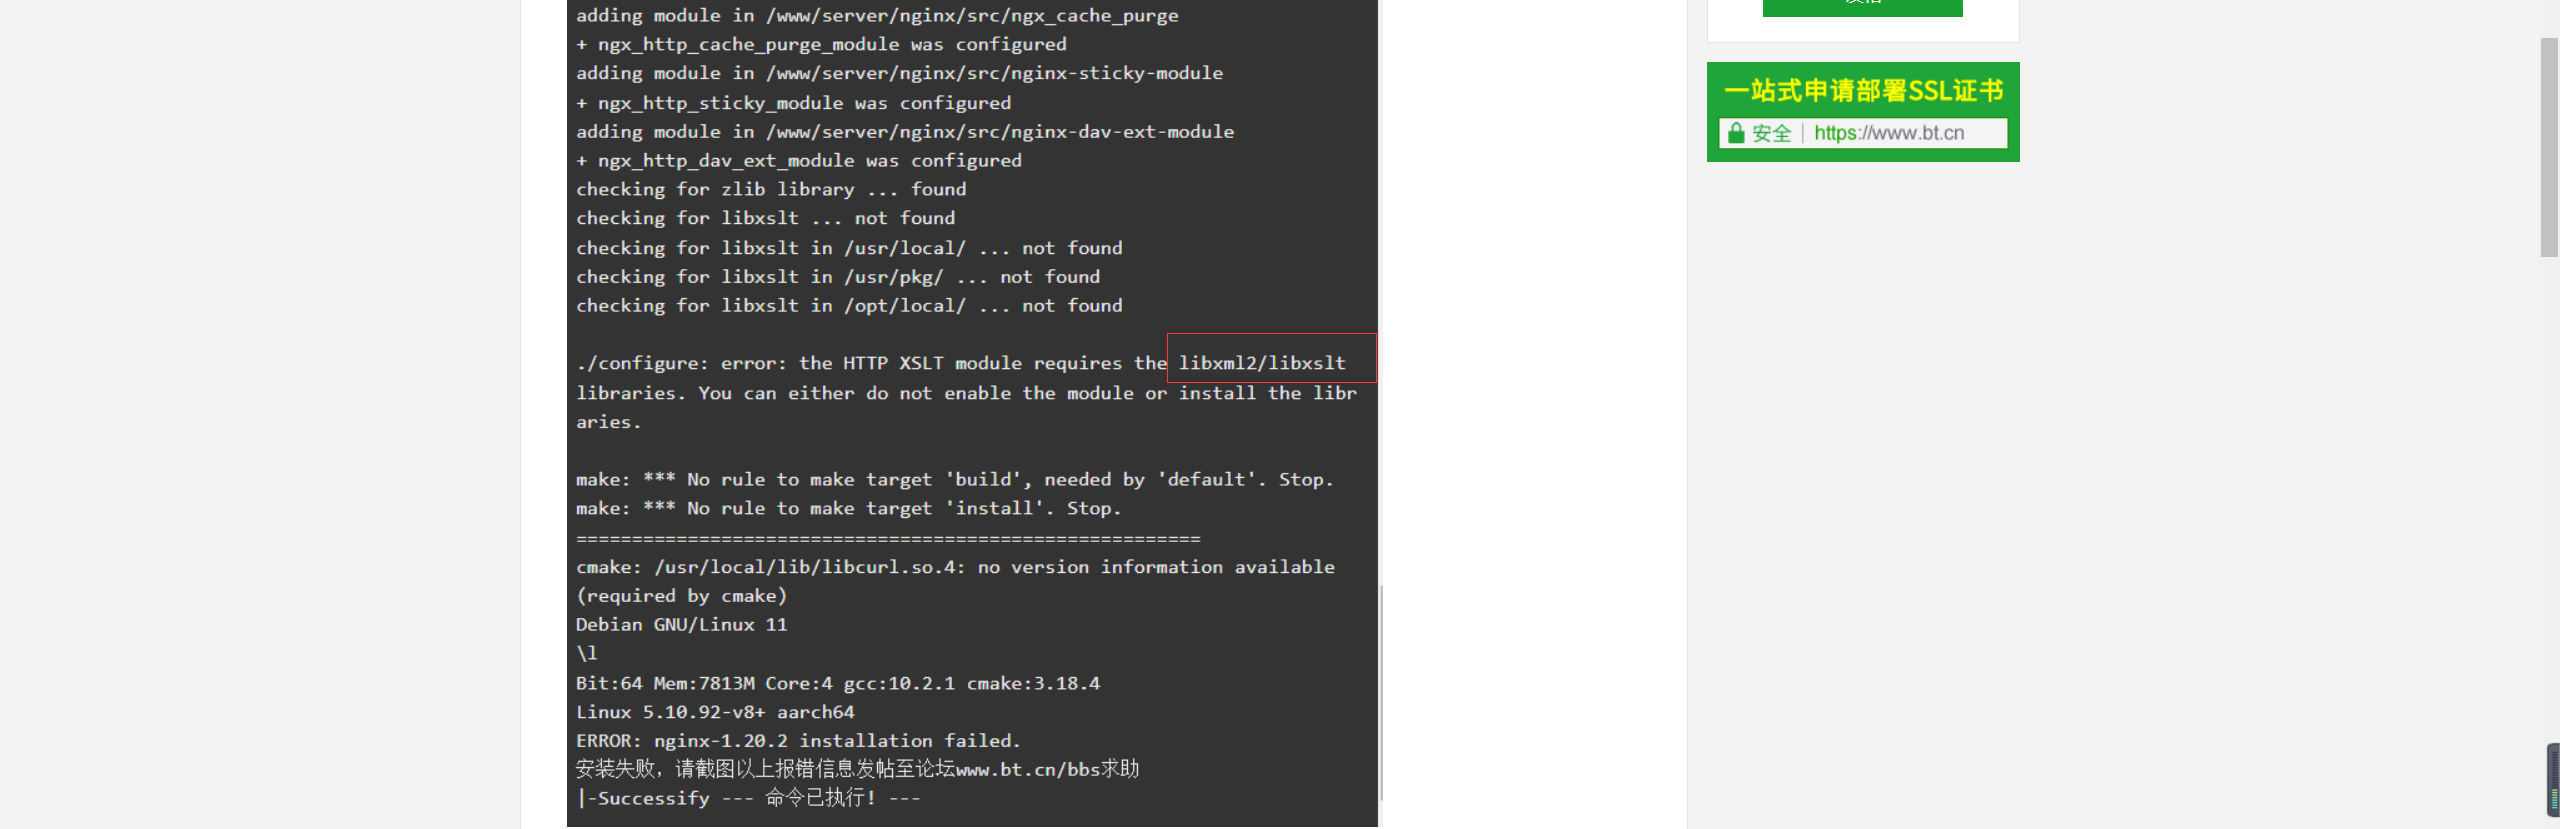 树莓派64位官方系统(Debian GNU/Linux 11 aarch64)安装宝塔面板7.8.0及LNMP/LAMP环境